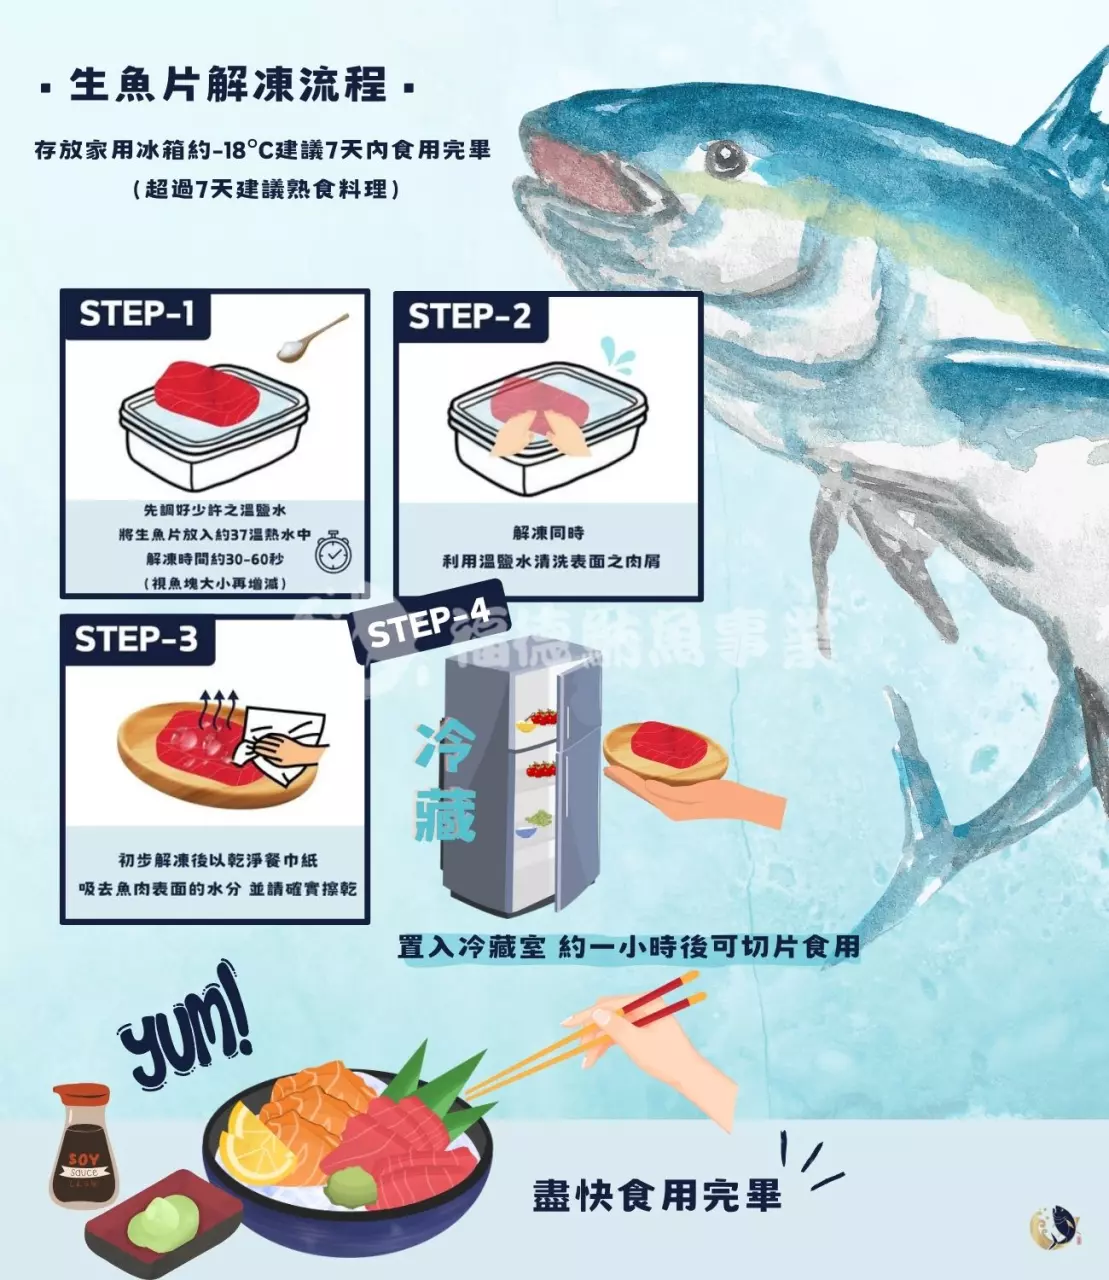  生魚片 生魚片料理 鮭魚生魚片